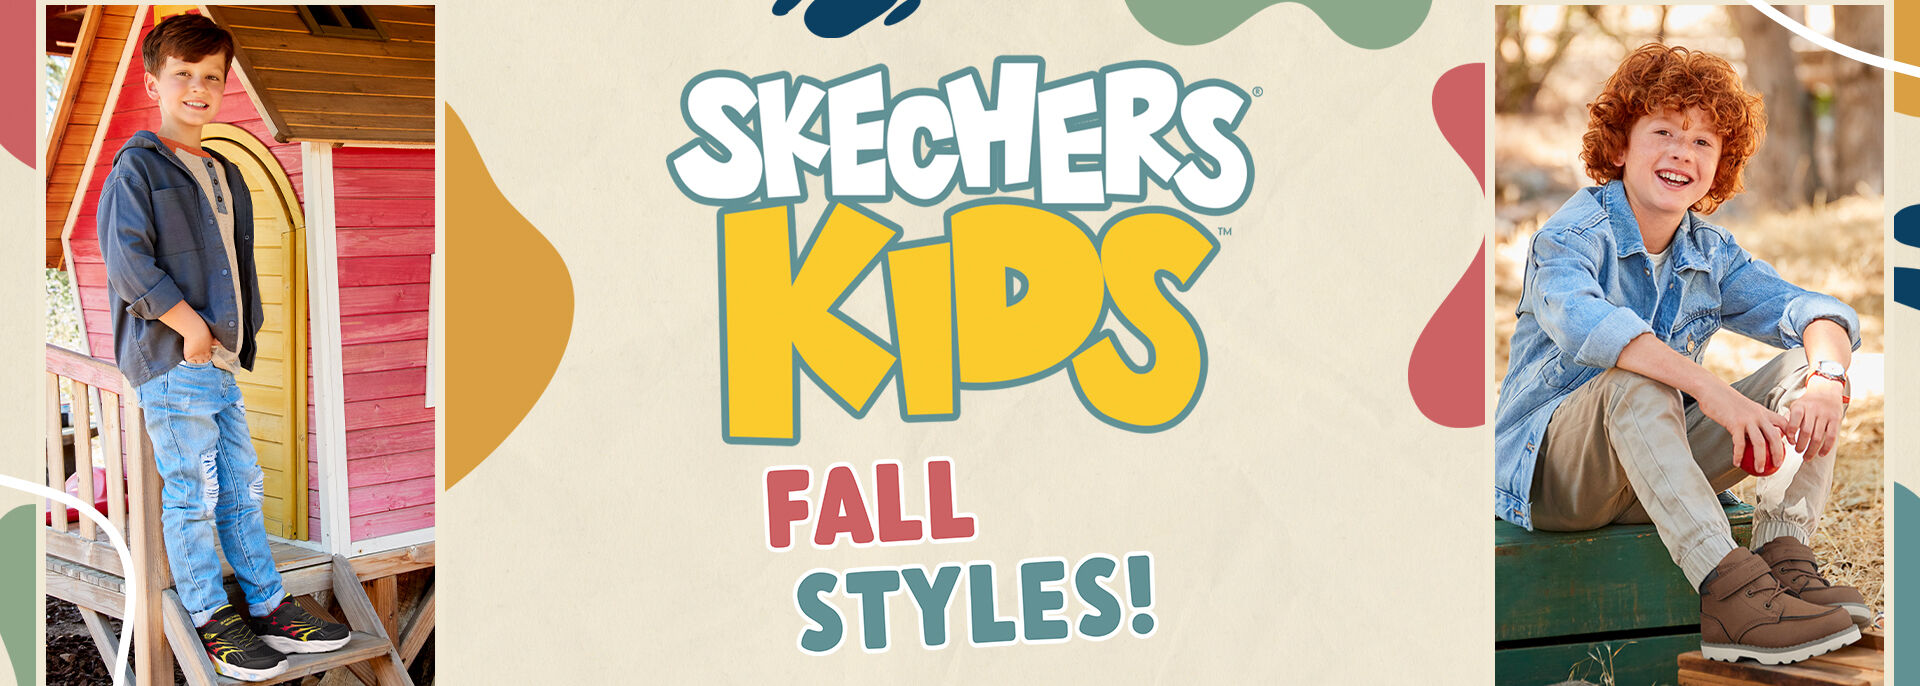 Skechers_Kids_Boy_D.jpg